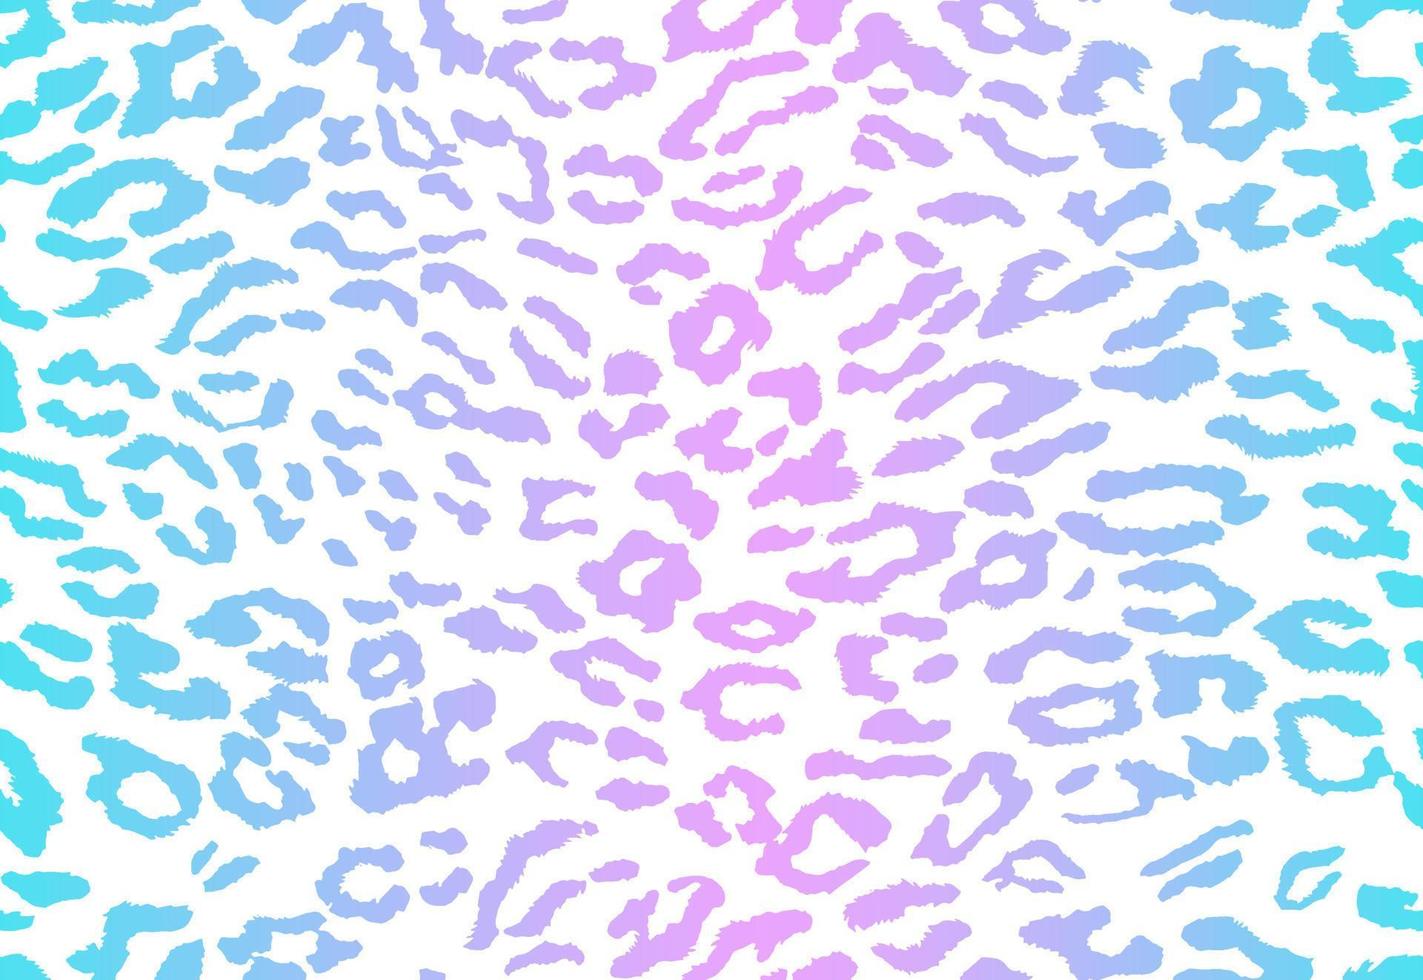 leopard bakgrund. sömlösa mönster. djurtryck. vektor